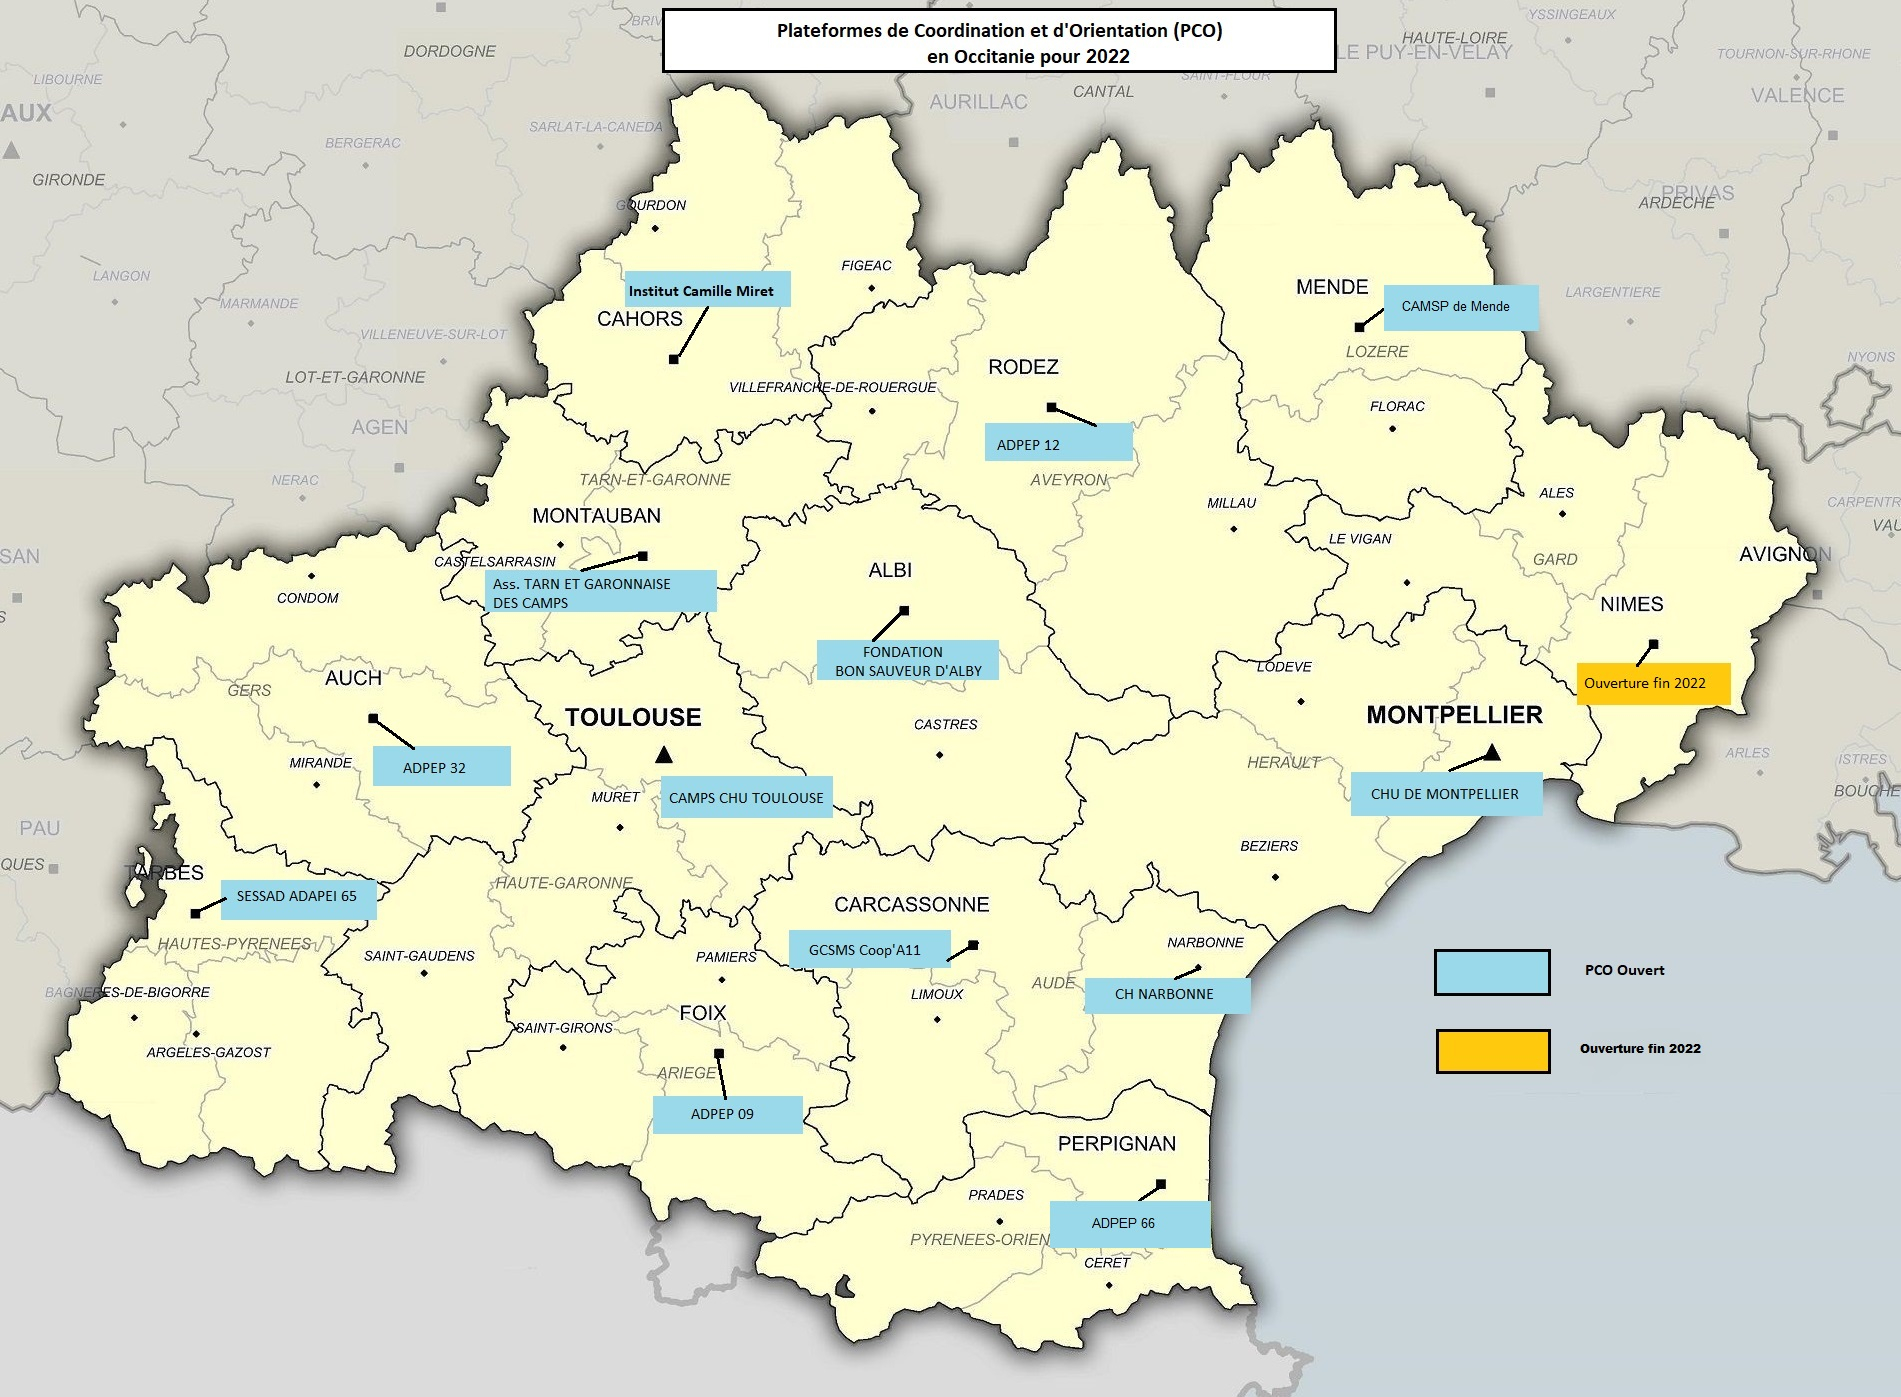 Carte des plateformes en Occitanie